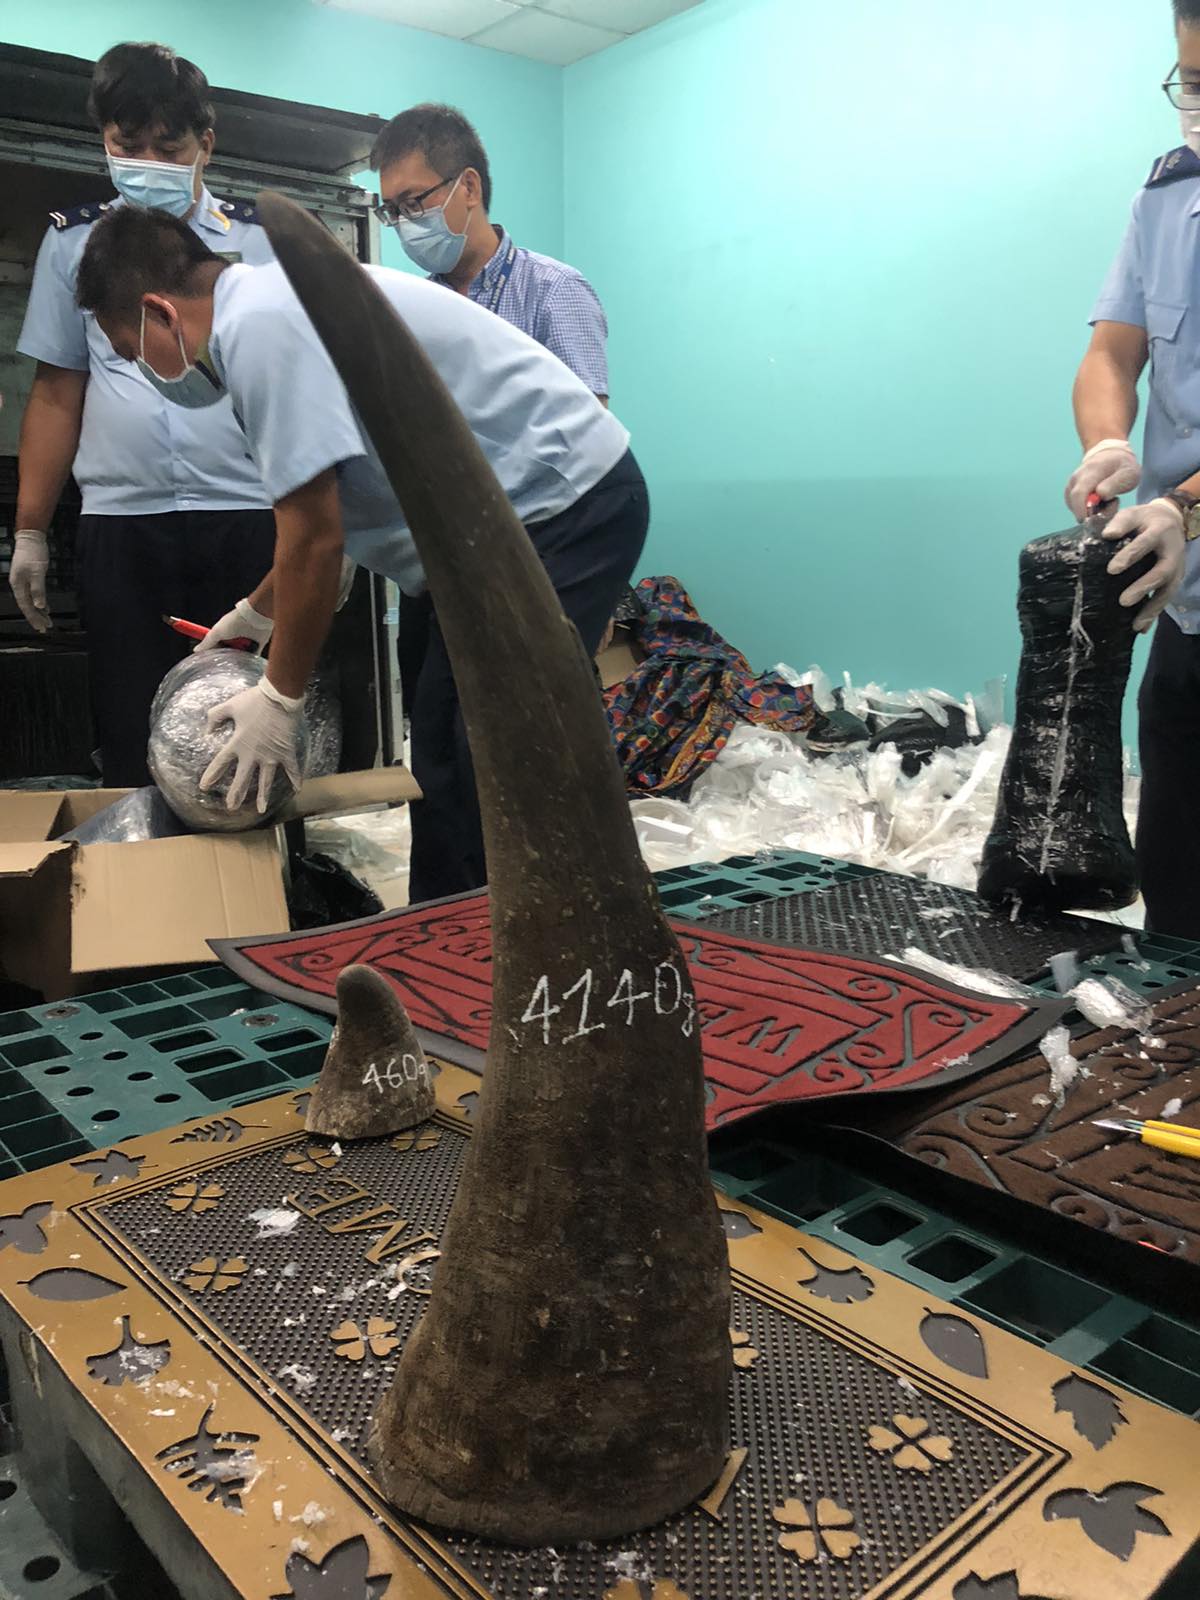 Hé lộ công ty đứng sau gần 100 kg nghi sừng tê giác ở khu vực sân bay Tân Sơn Nhất - Ảnh 1.